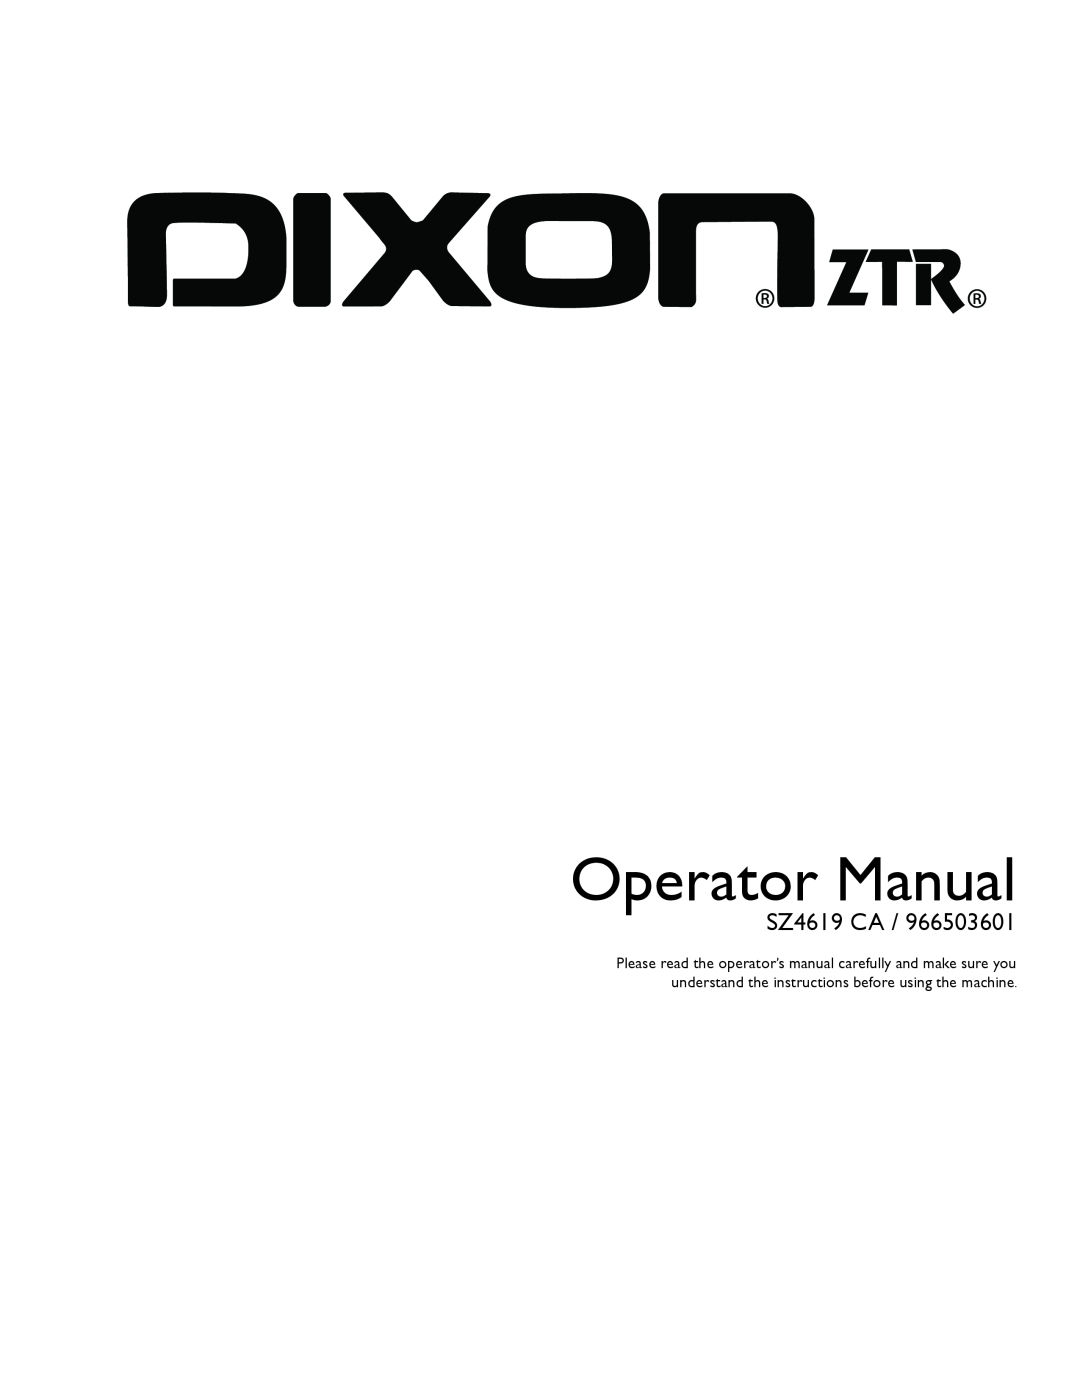 Dixon 966503601 manual Operator Manual, SZ4619 CA 